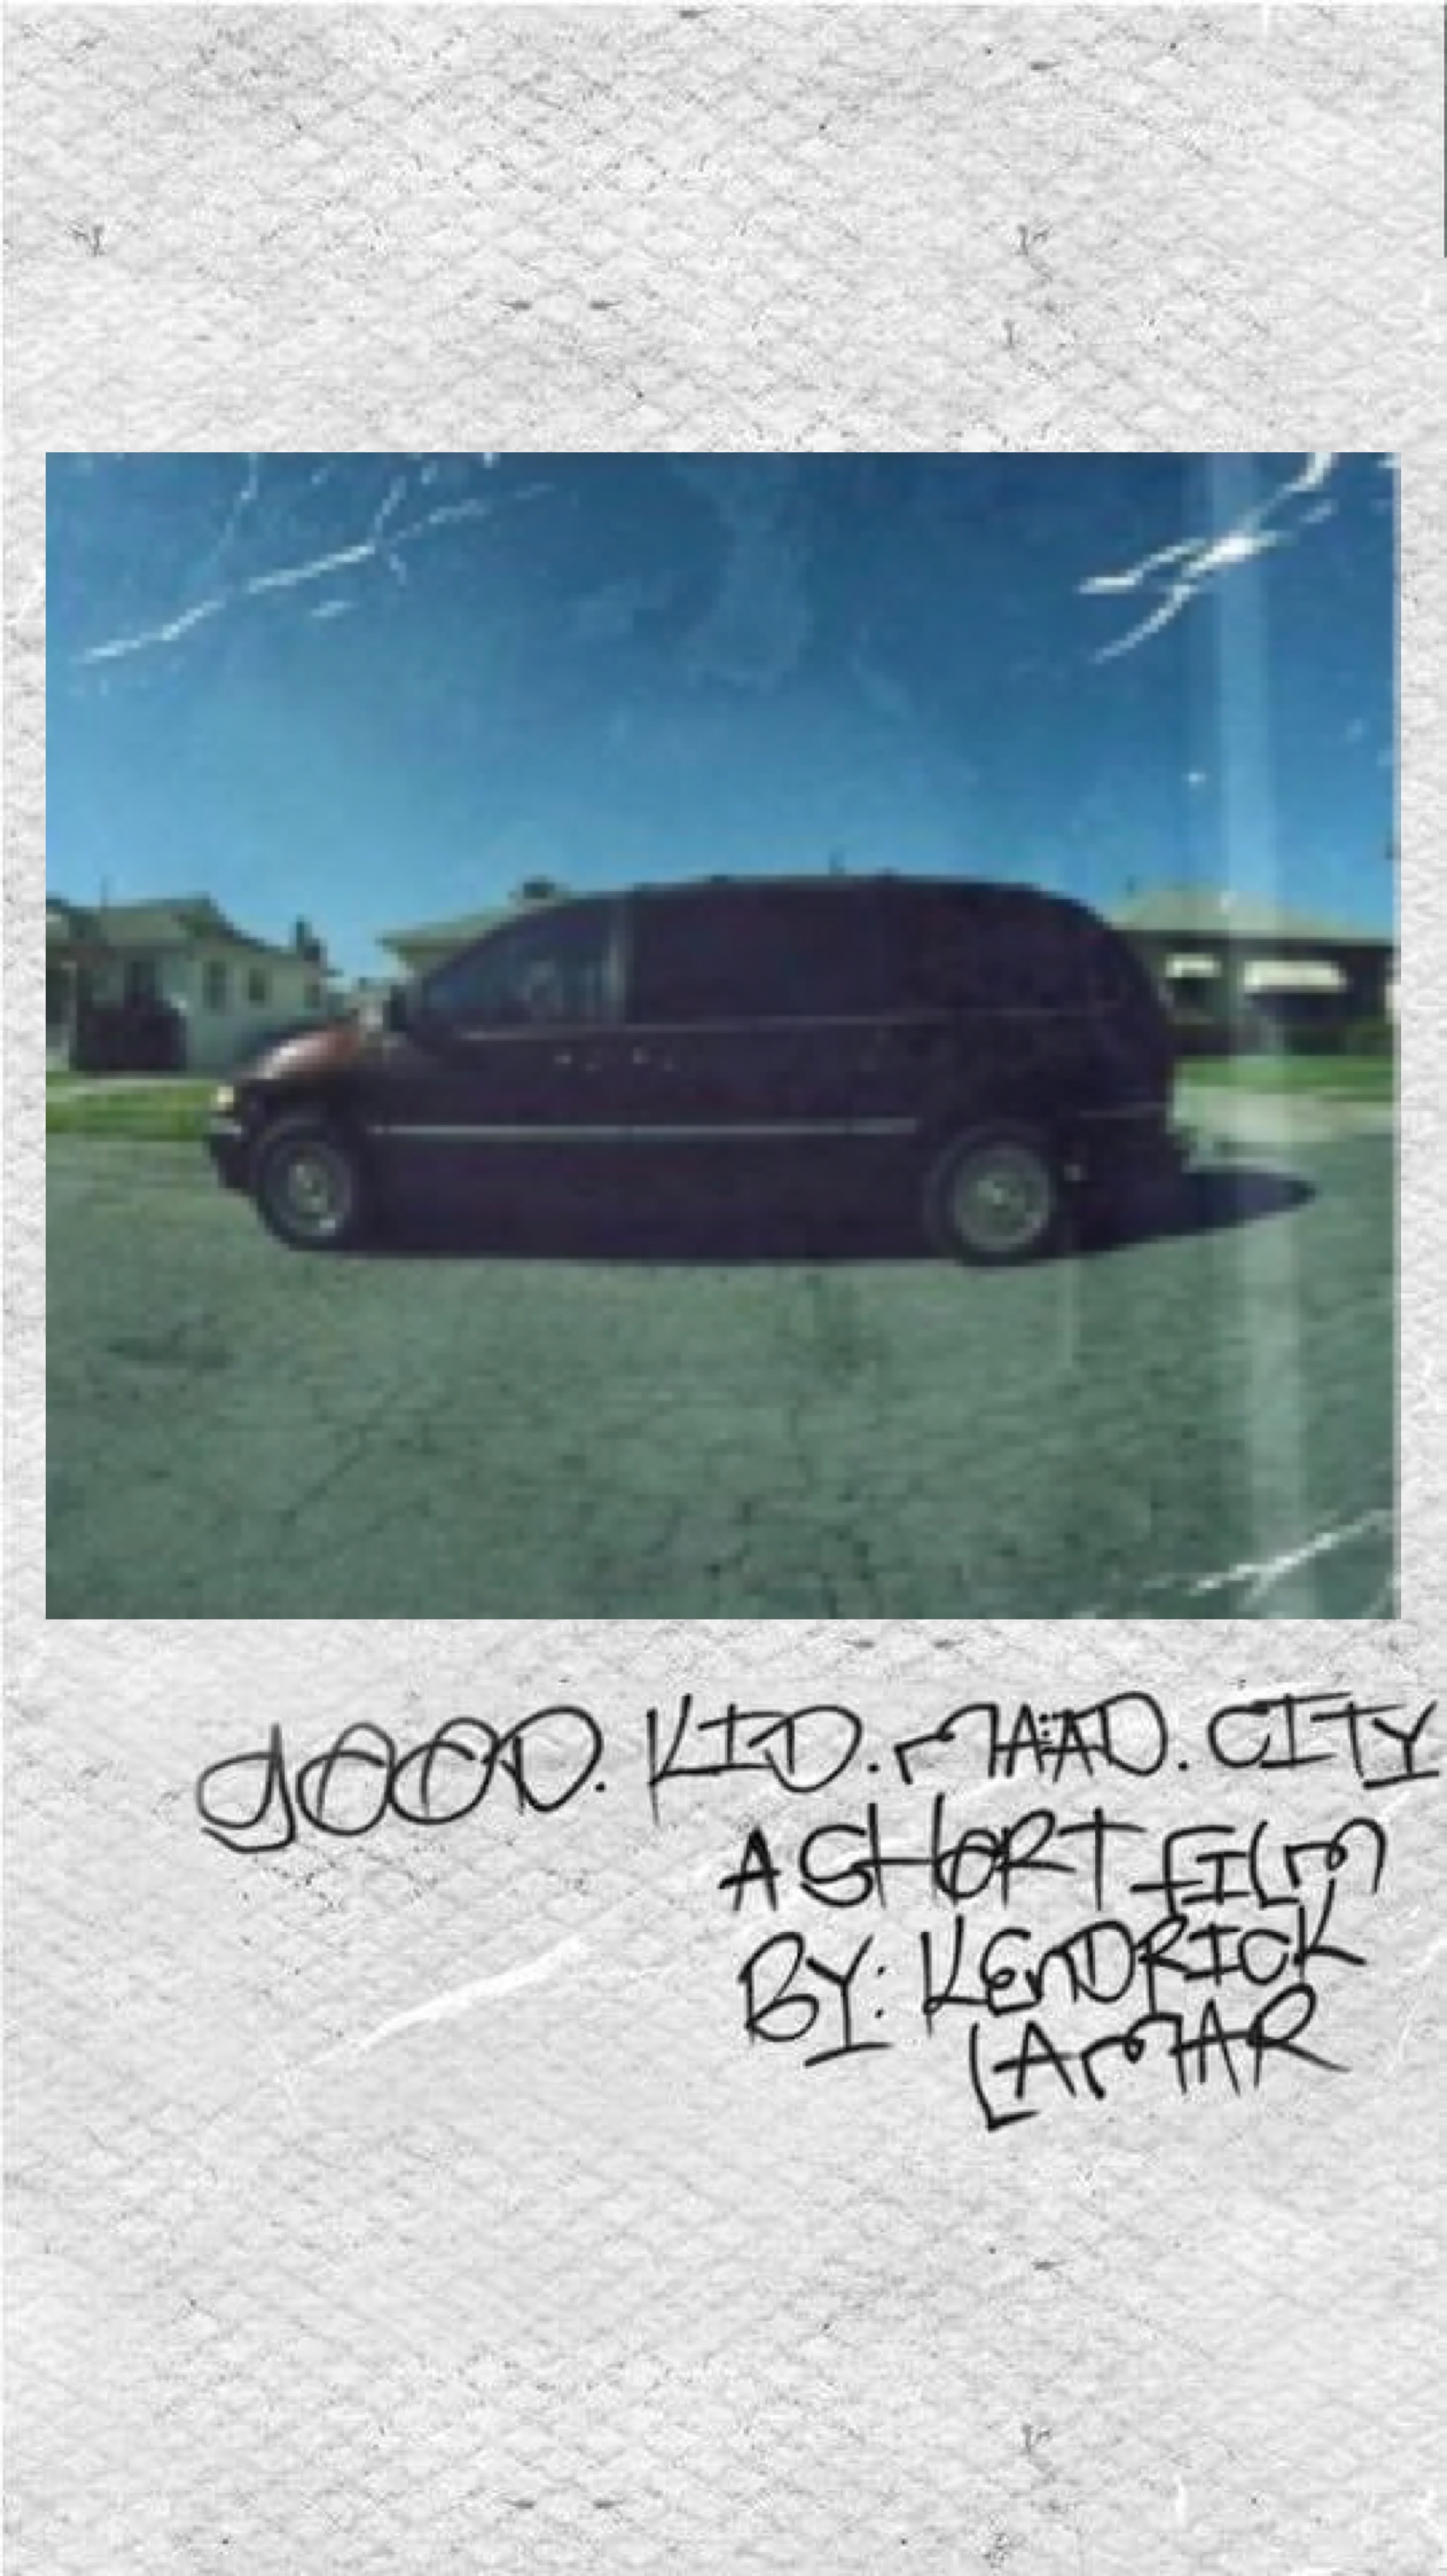 Good Kid Maad City Album Cover Deluxe - HD Wallpaper 